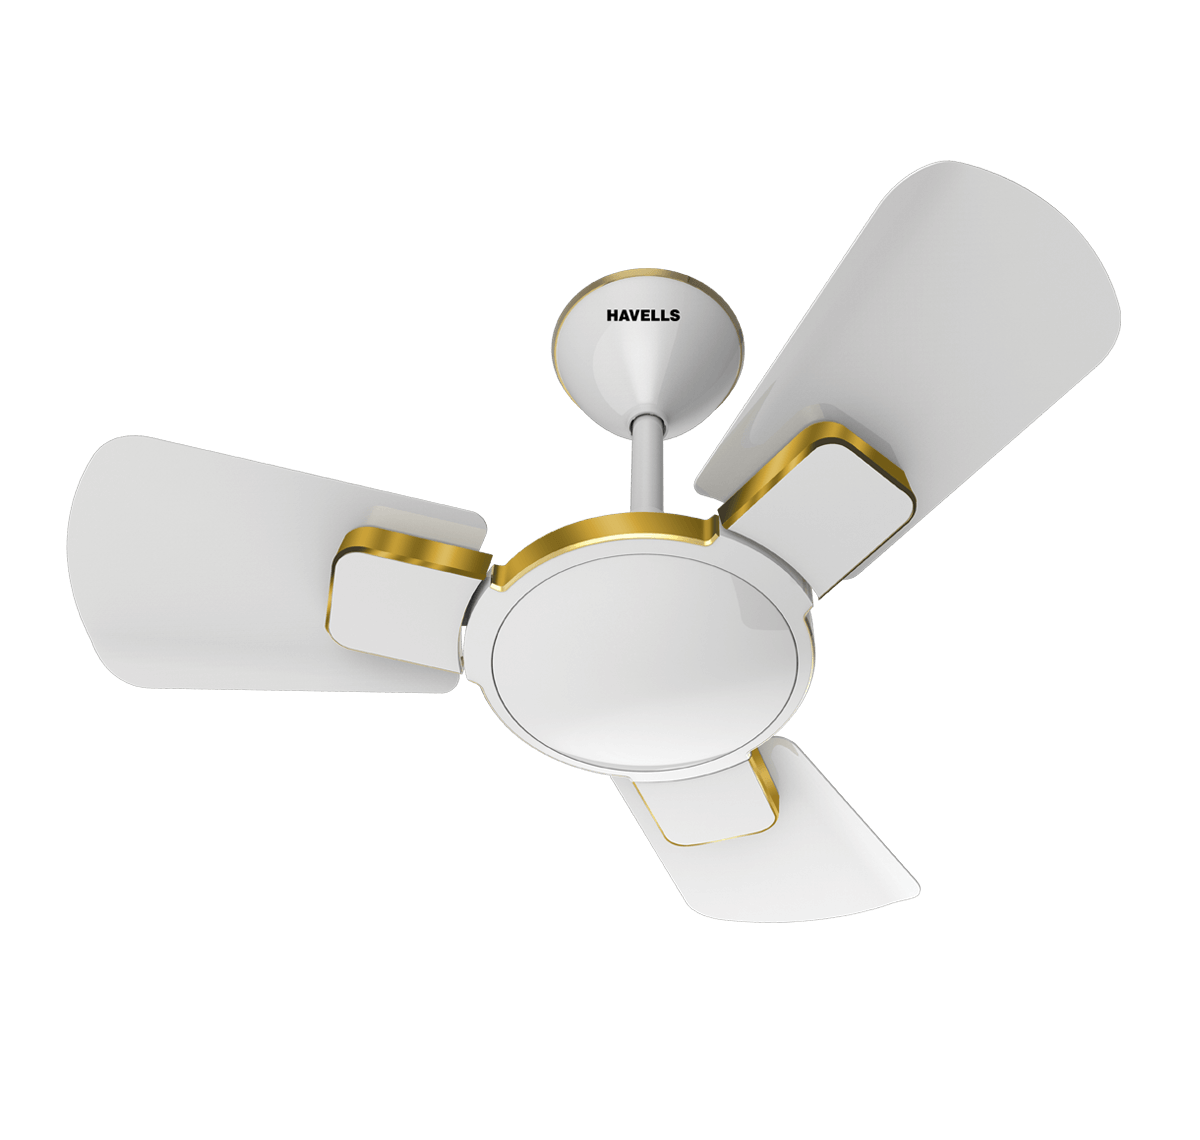 Havells Ceiling Fan 600mm ENTICER